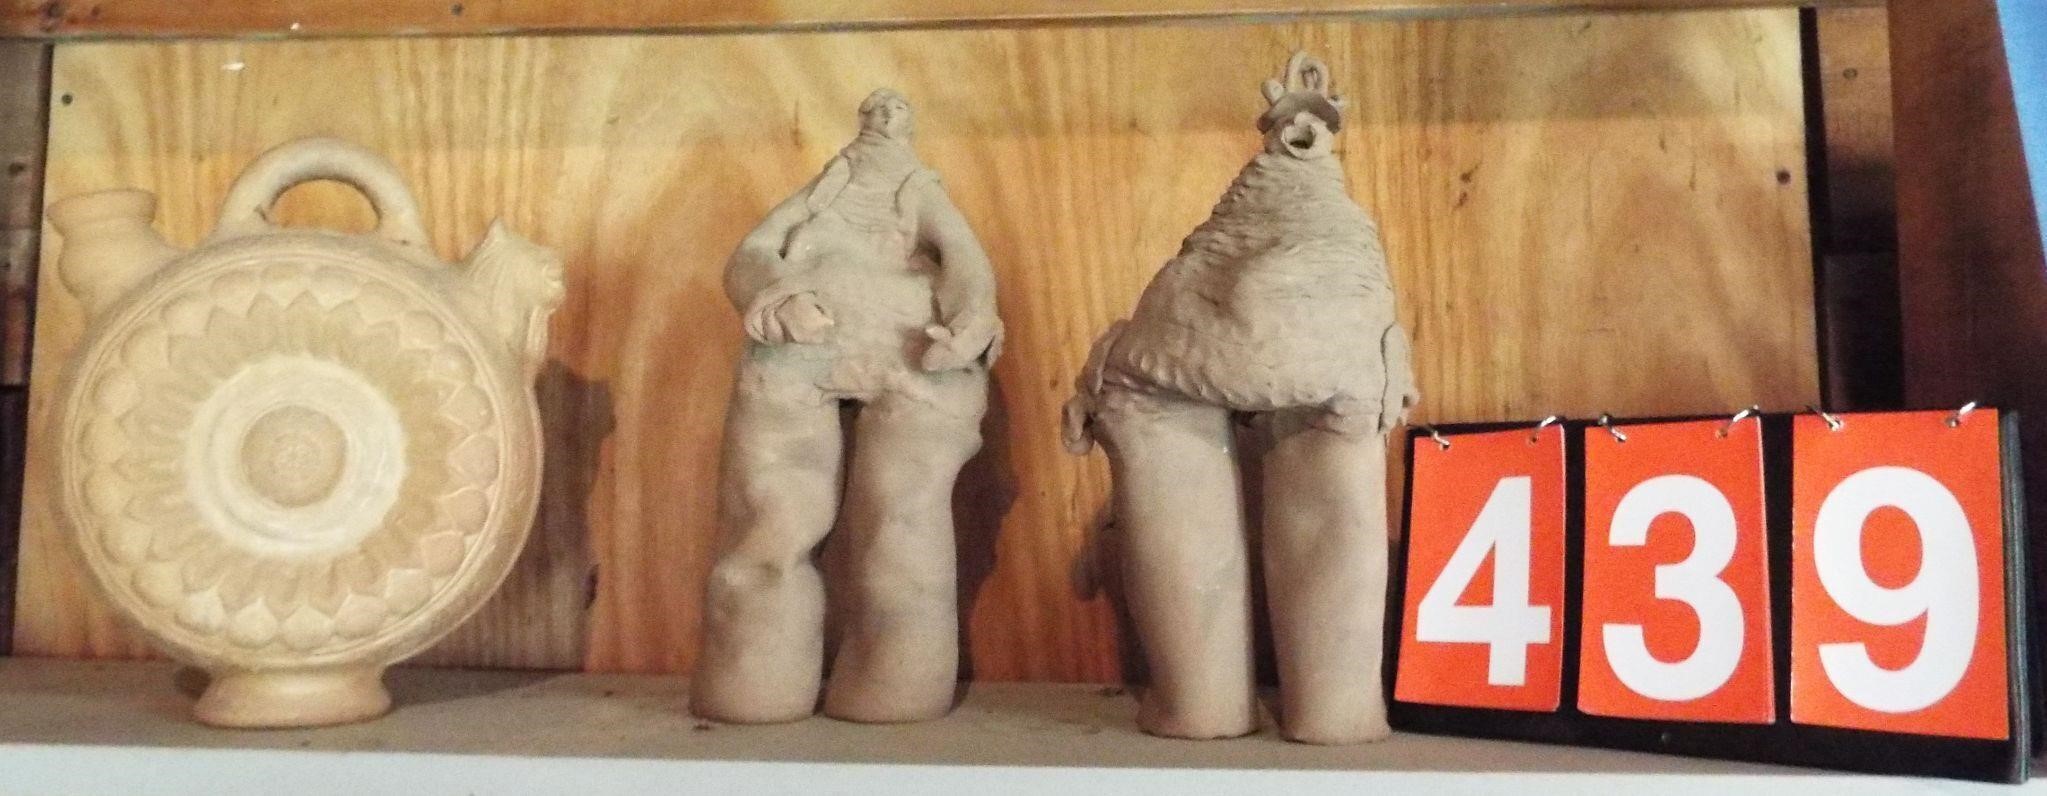 3 clay figures on shelf